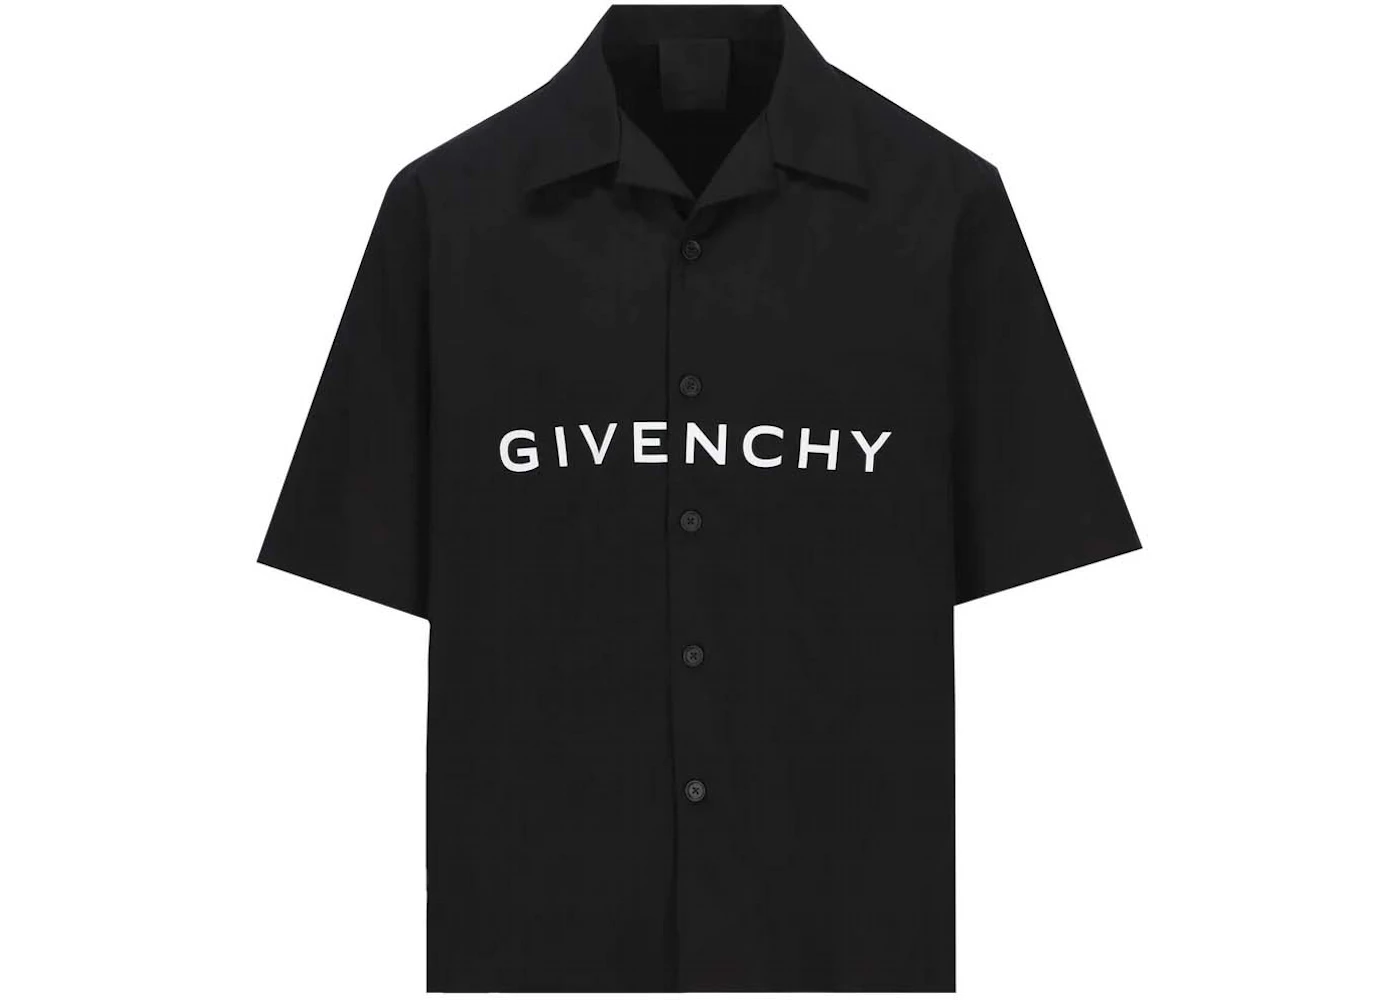 Givenchy Logo Printed Short-Sleeved Shirt Black Men's - US